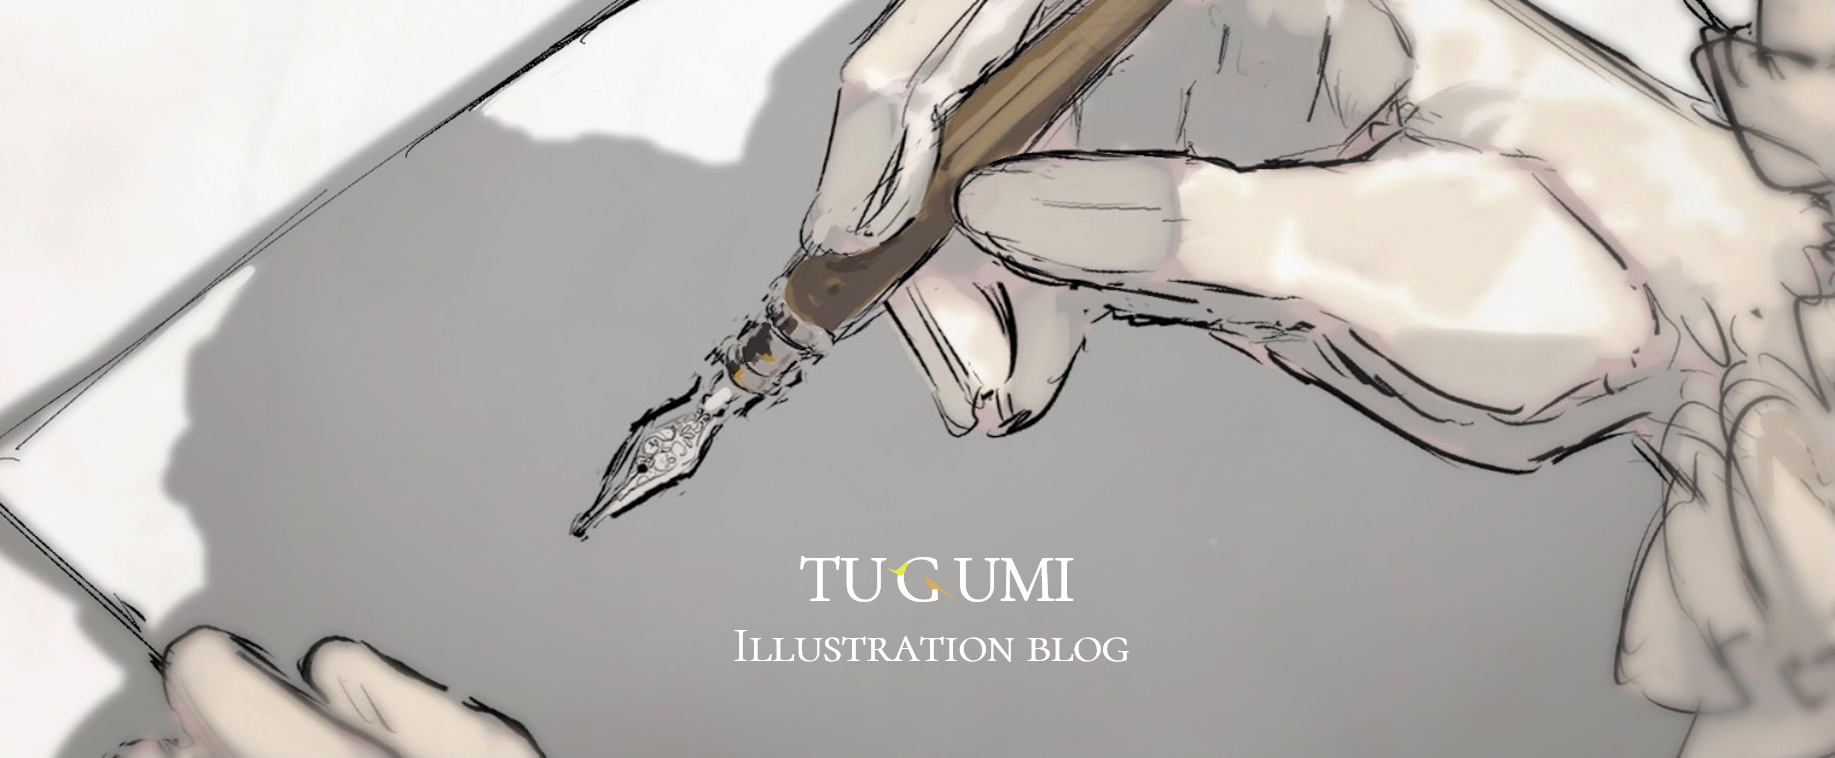 Tugumi illustration blog